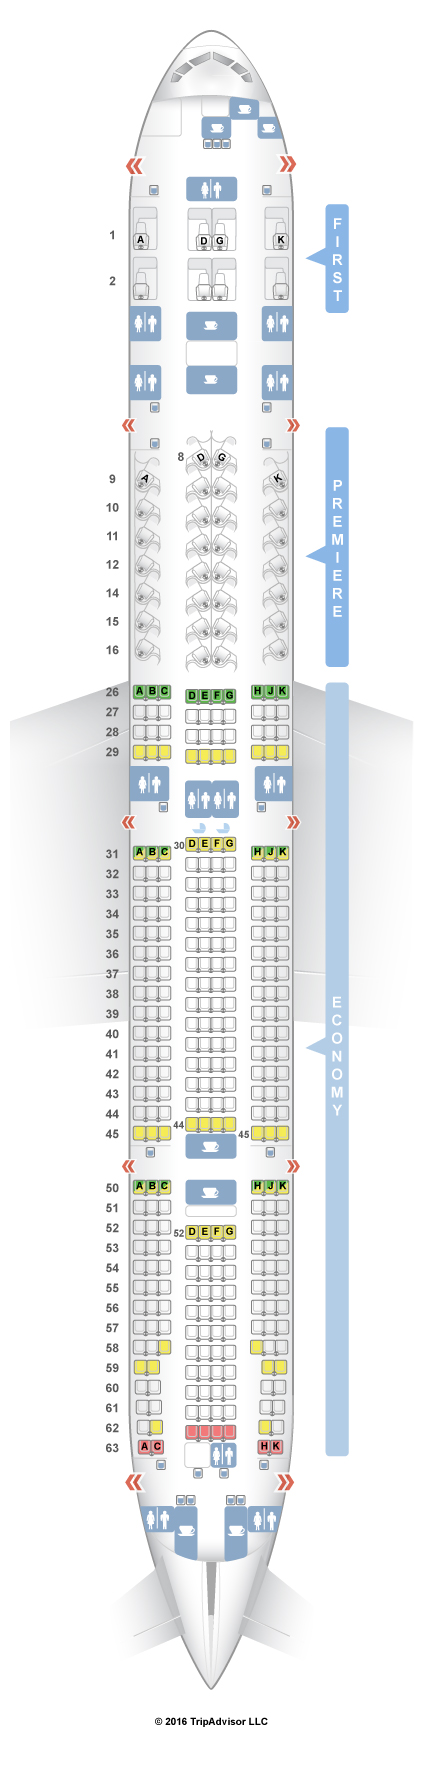 SeatGuru Seat Map Jet Airways Boeing 777-300ER (77W)